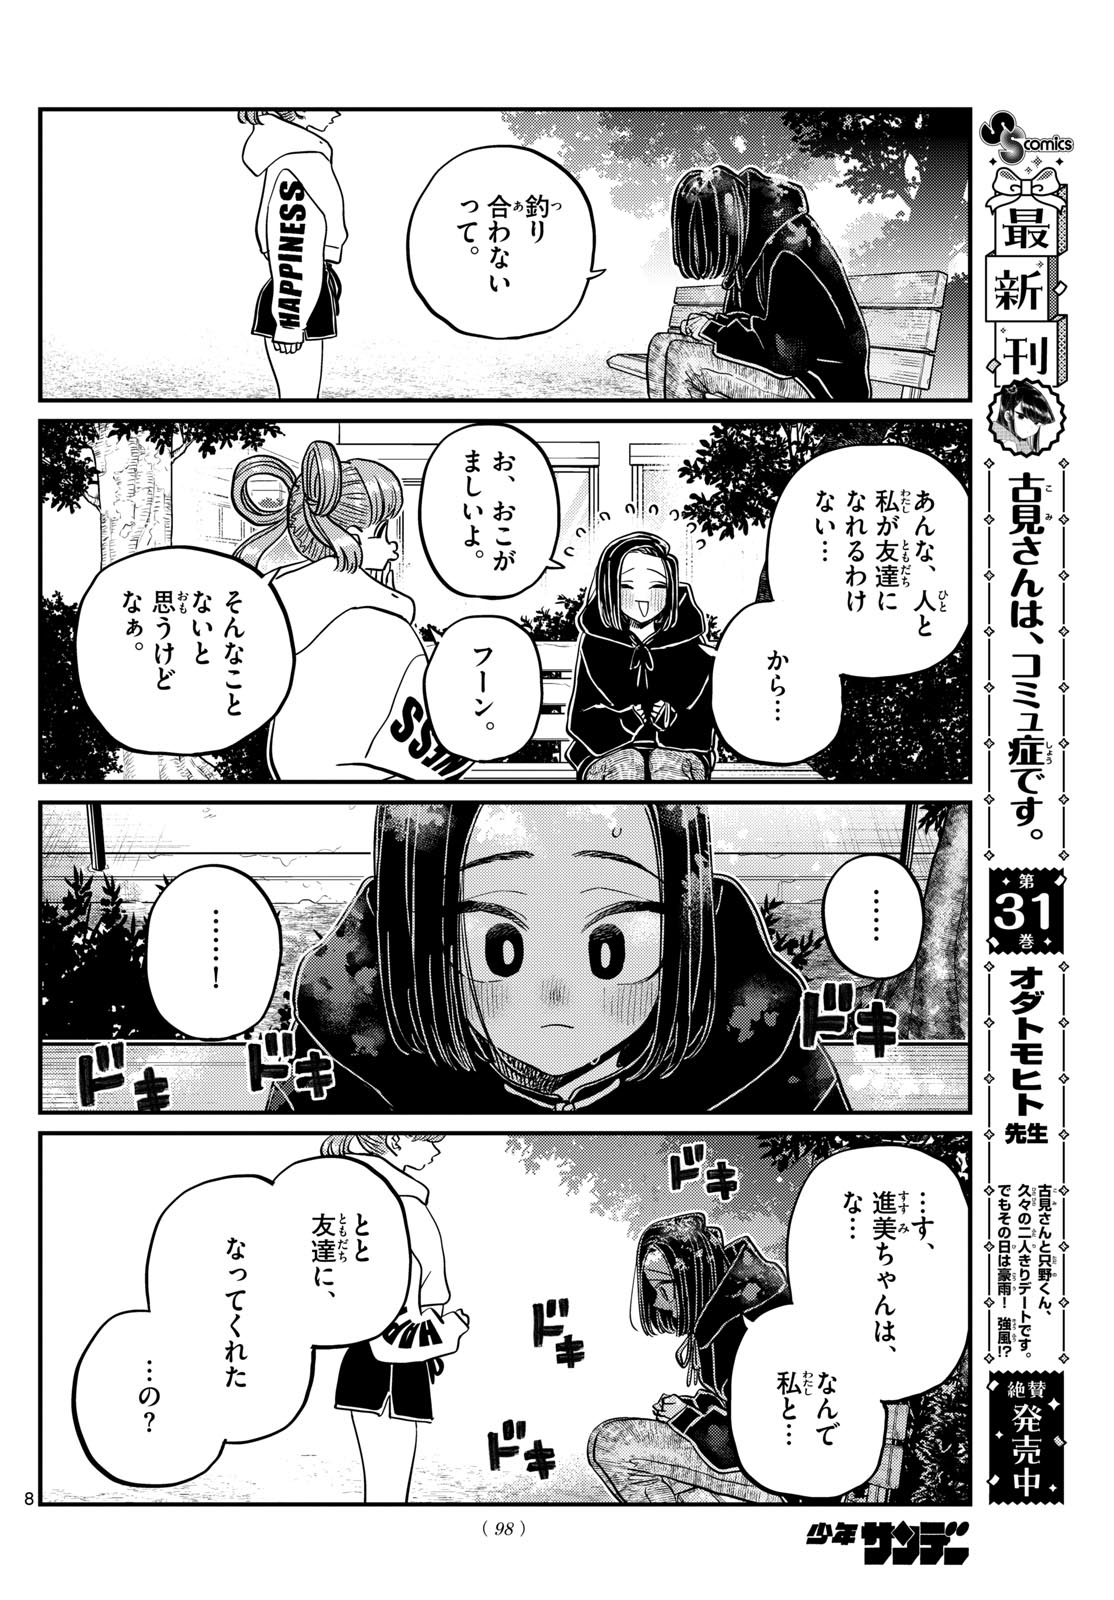 Komi-san wa Komyushou Desu - Chapter 435 - Page 8